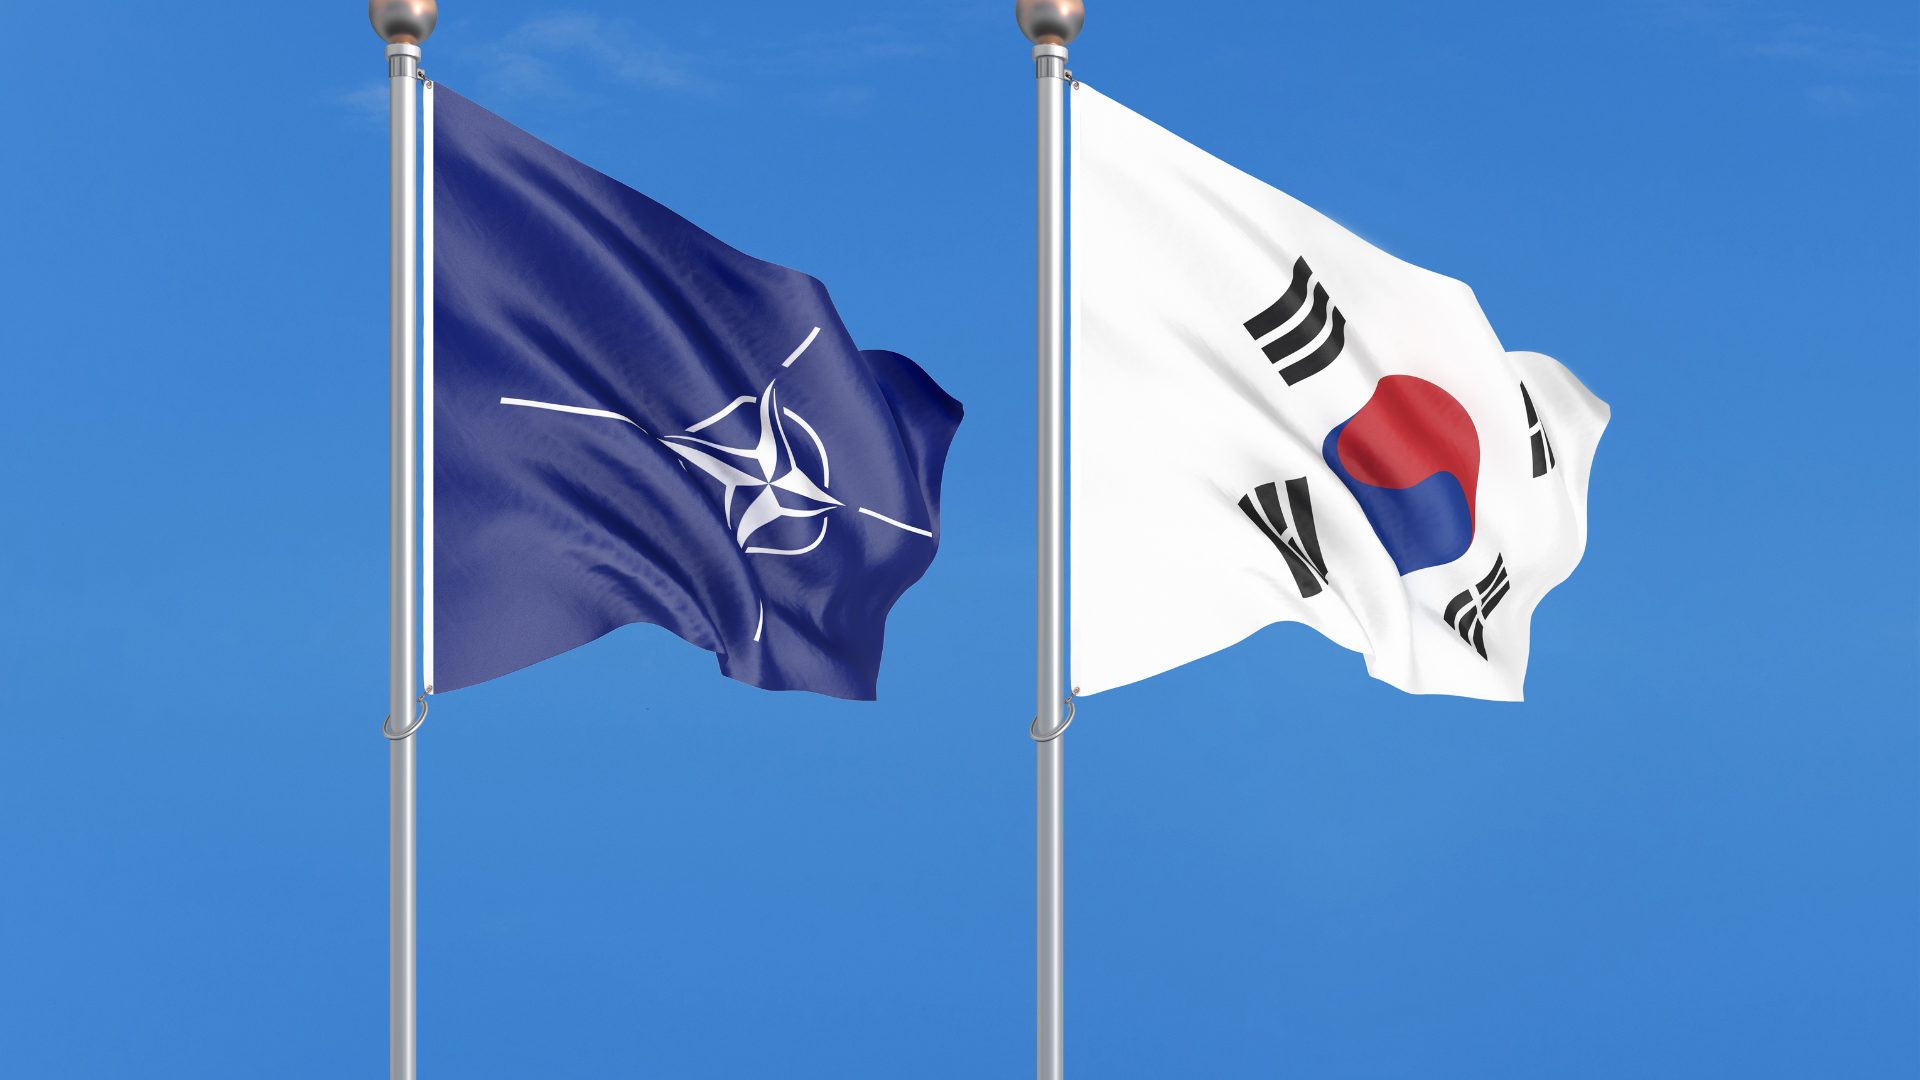 [EAI 이슈브리핑] 2022 마드리드 나토 정상회의: 한국의 참여가 우리 외교에 주는 함의